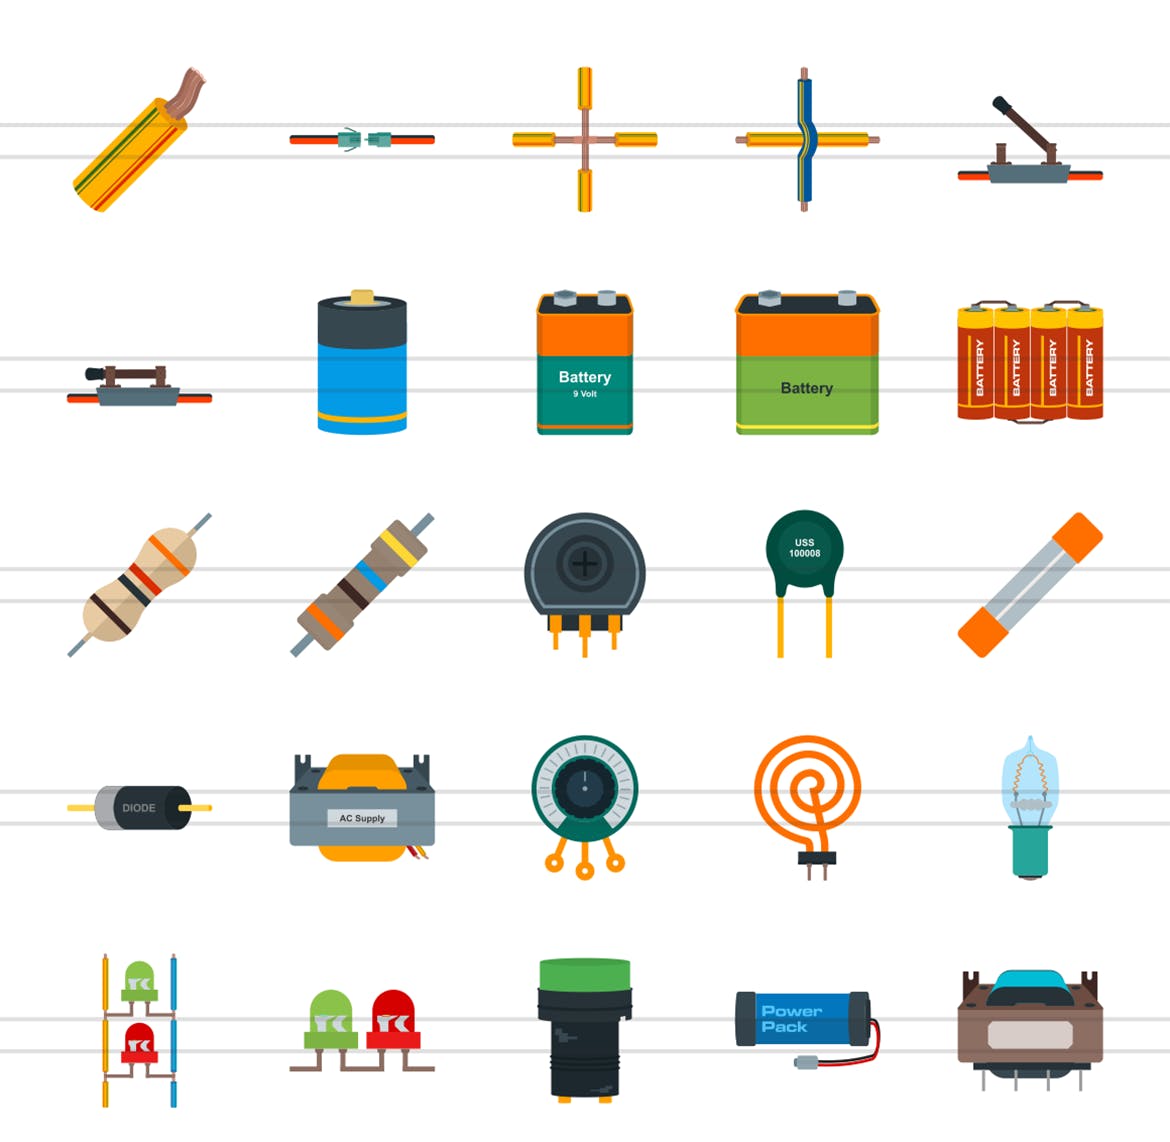 50枚电路线路板主题扁平化彩色矢量16设计素材网精选图标 50 Electric Circuits Flat Multicolor Icons插图(1)